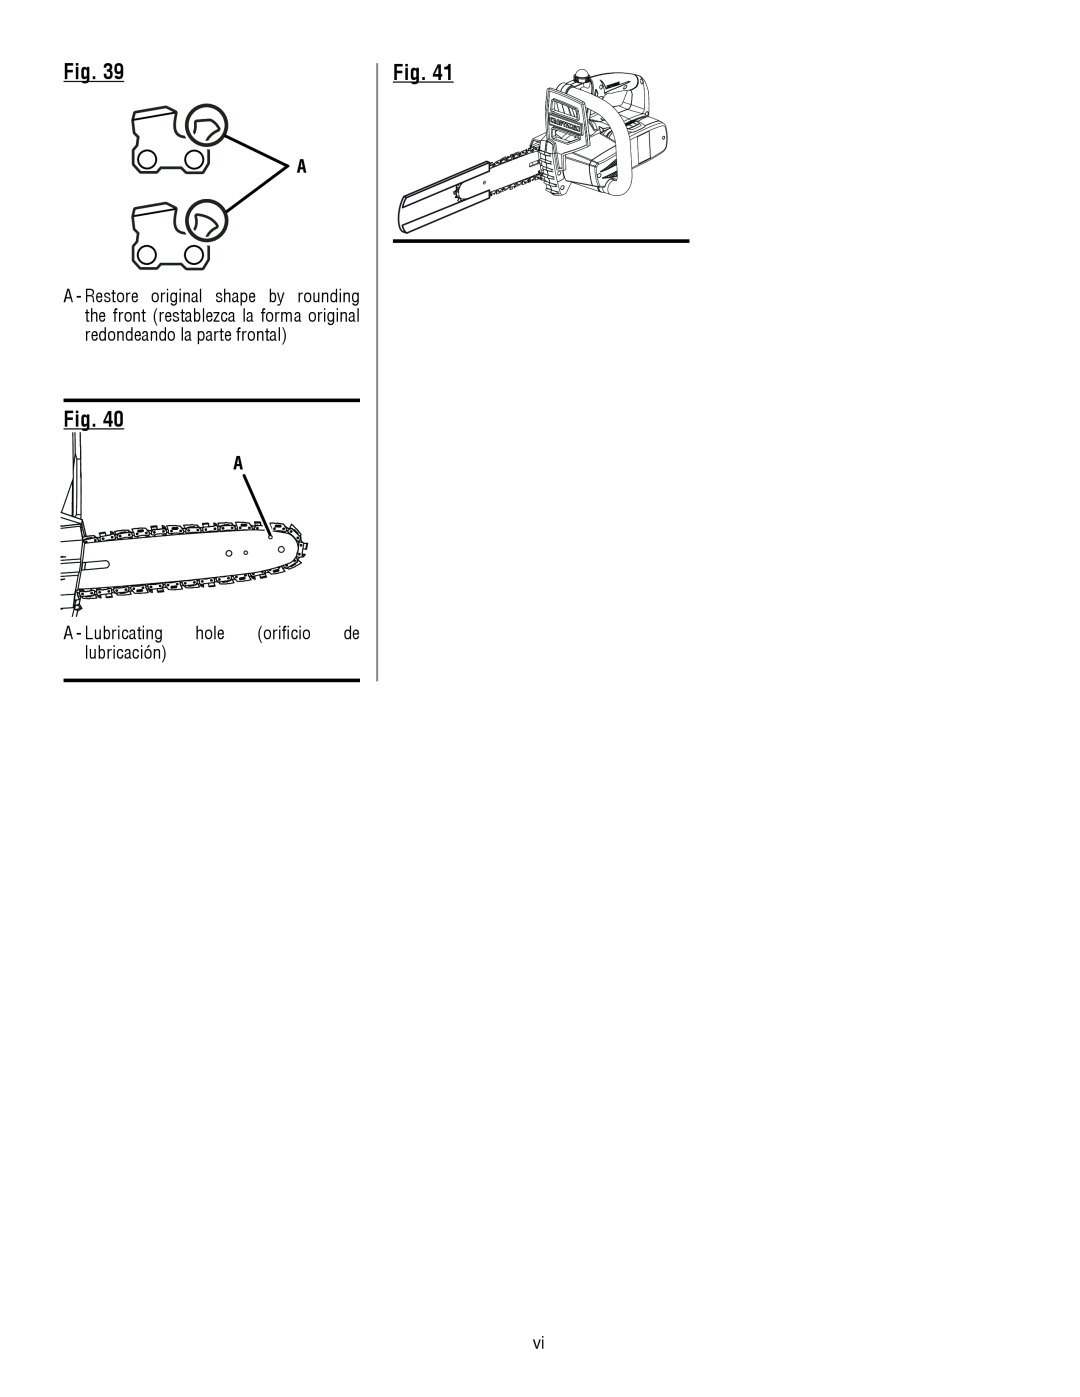 Craftsman 315.3413 manual A - Lubricating hole orificio de lubricación 